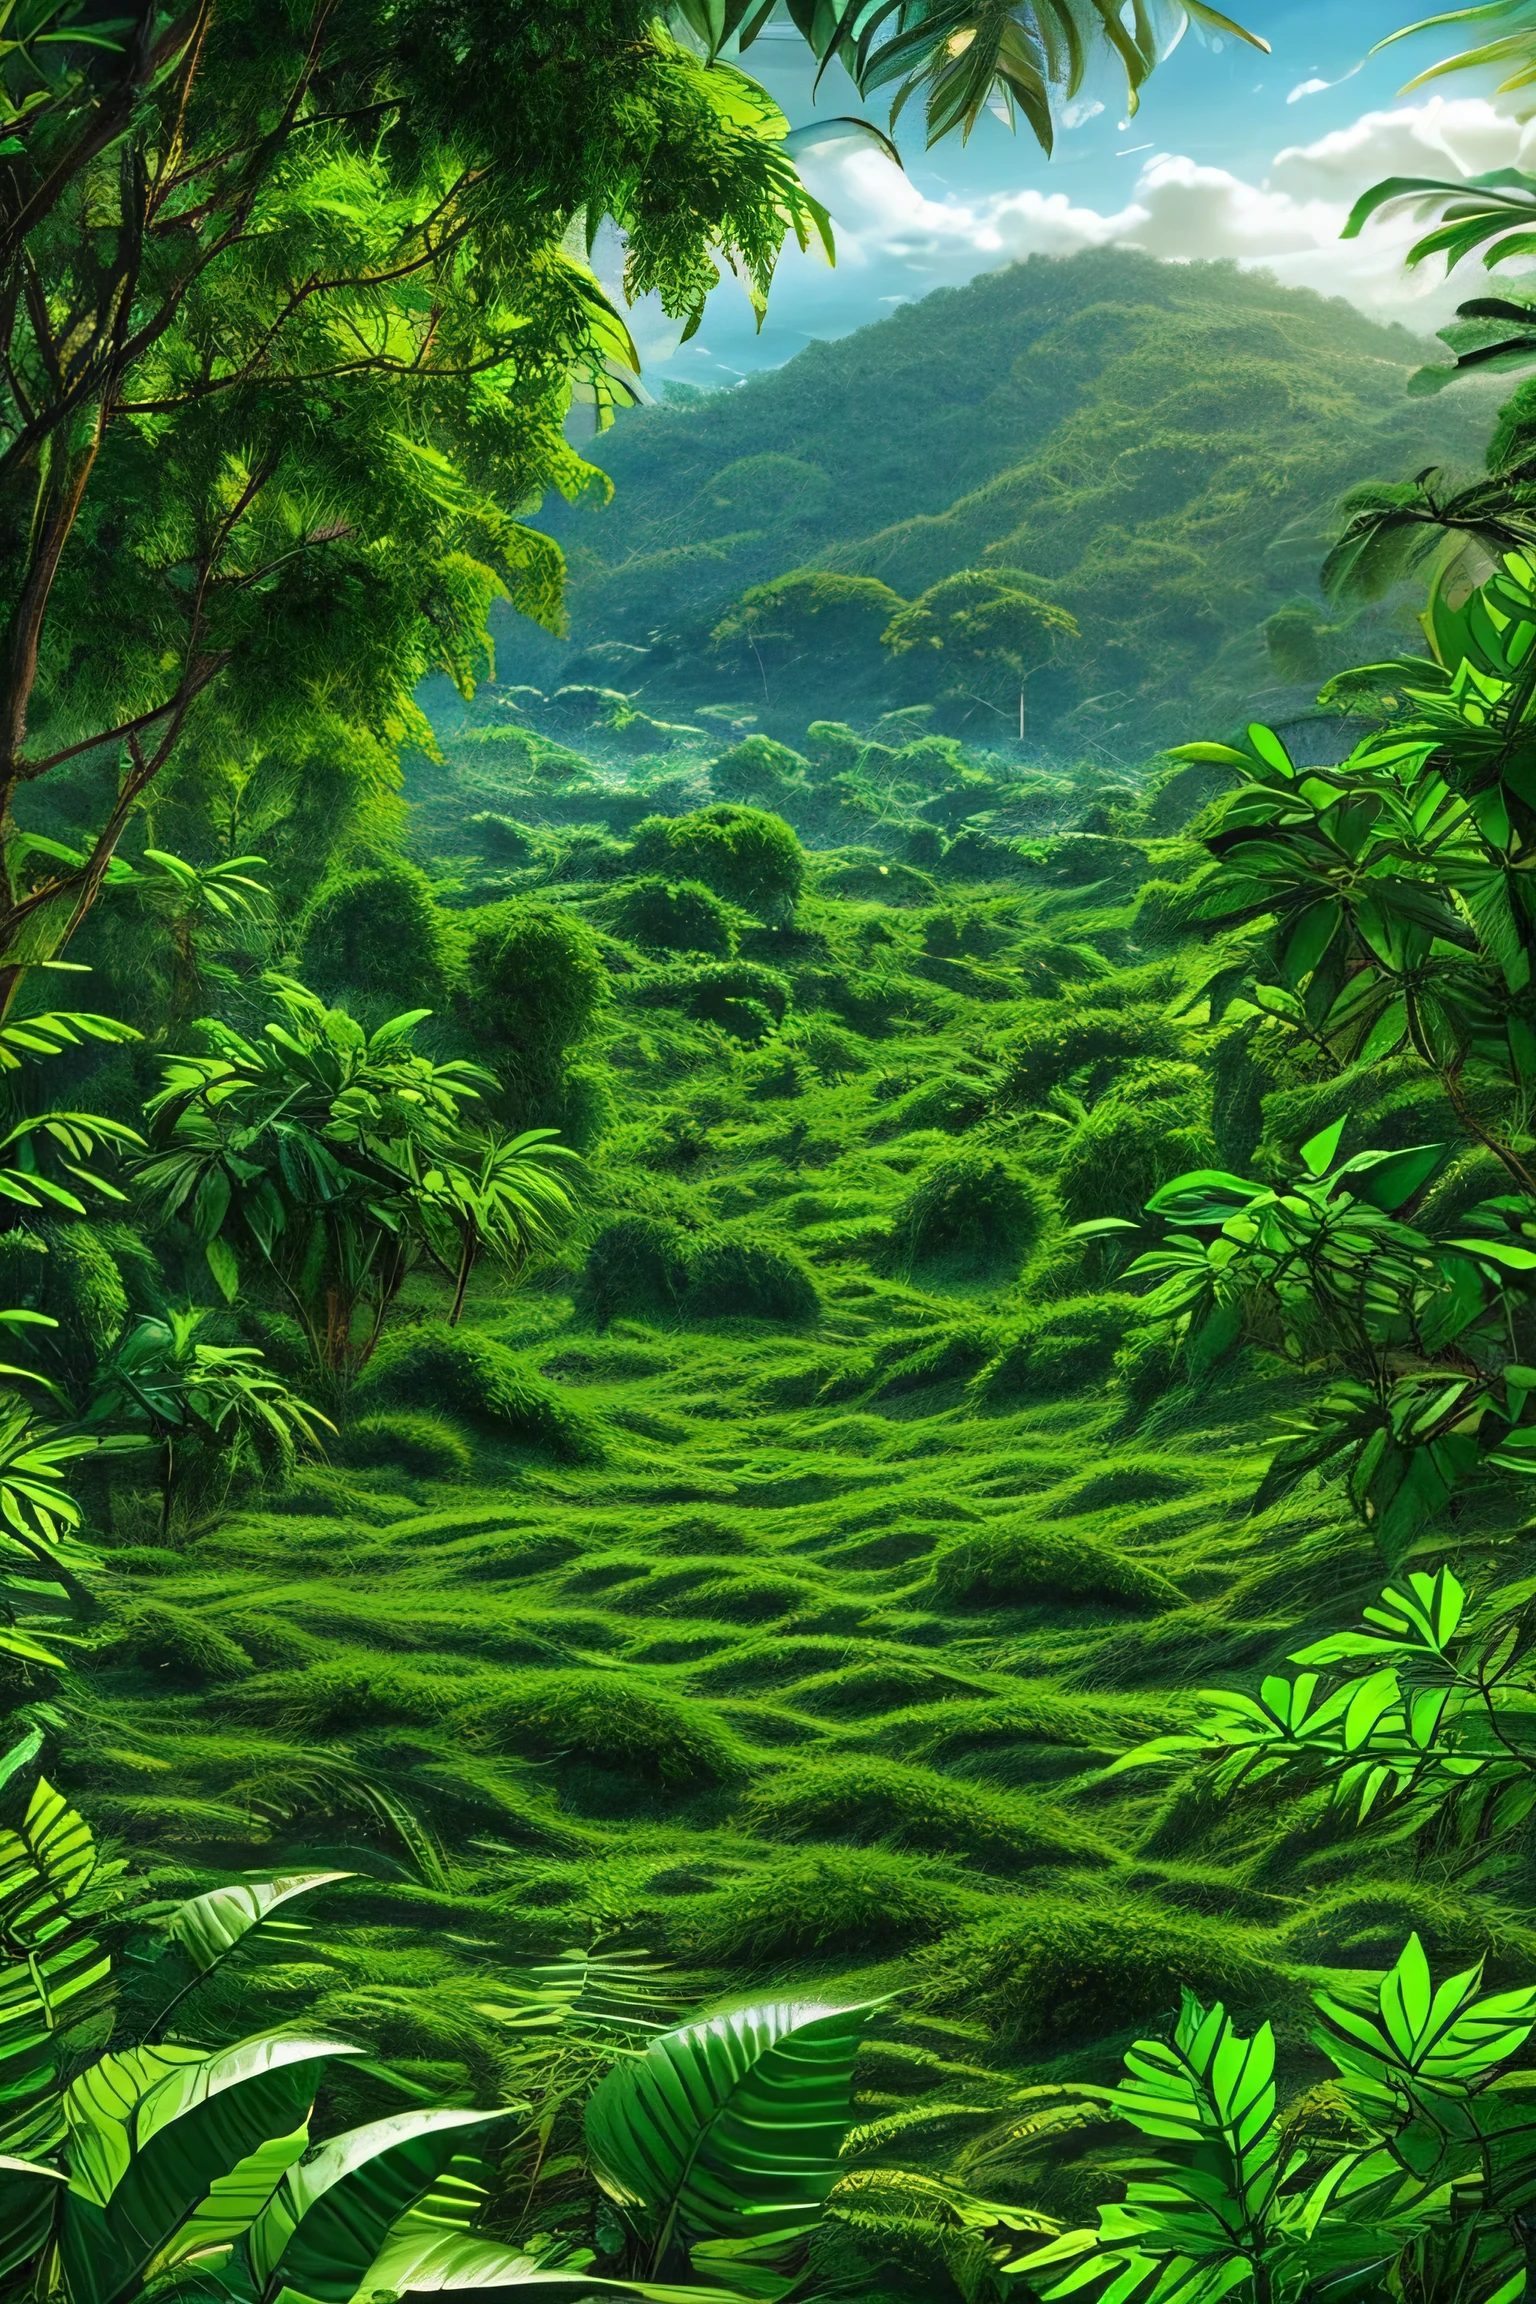 Красивый гиперреалистичный и сверхдетализированный шедевр, показывающий растительность тропических джунглей с экзотикой., Крупнолистные растения,